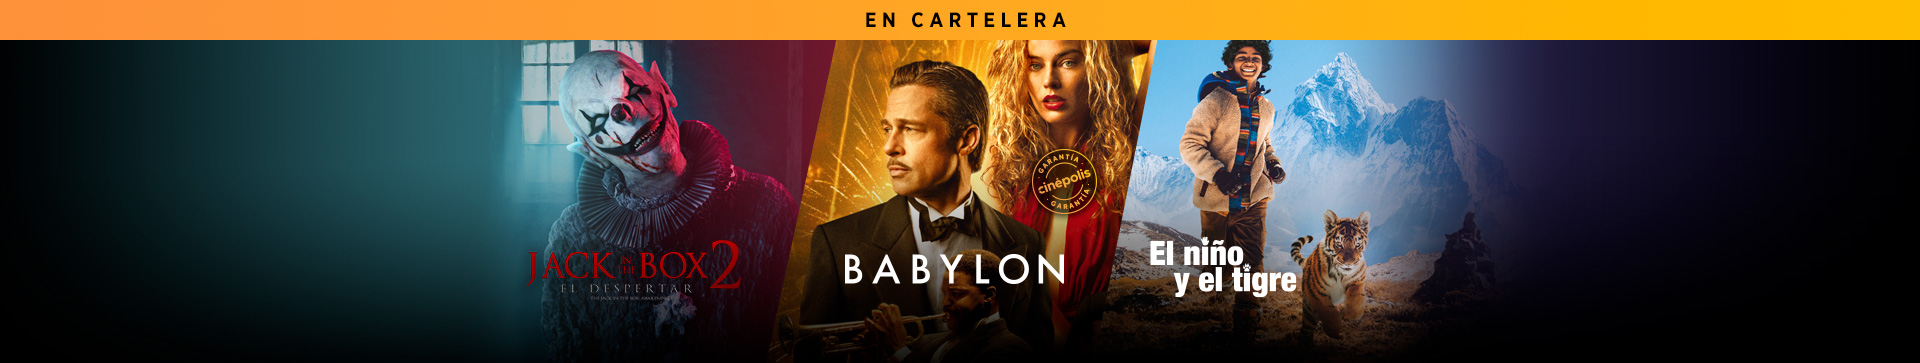 En Cartelera Jack In The Box 2 Babylon El Niño y el Tigre